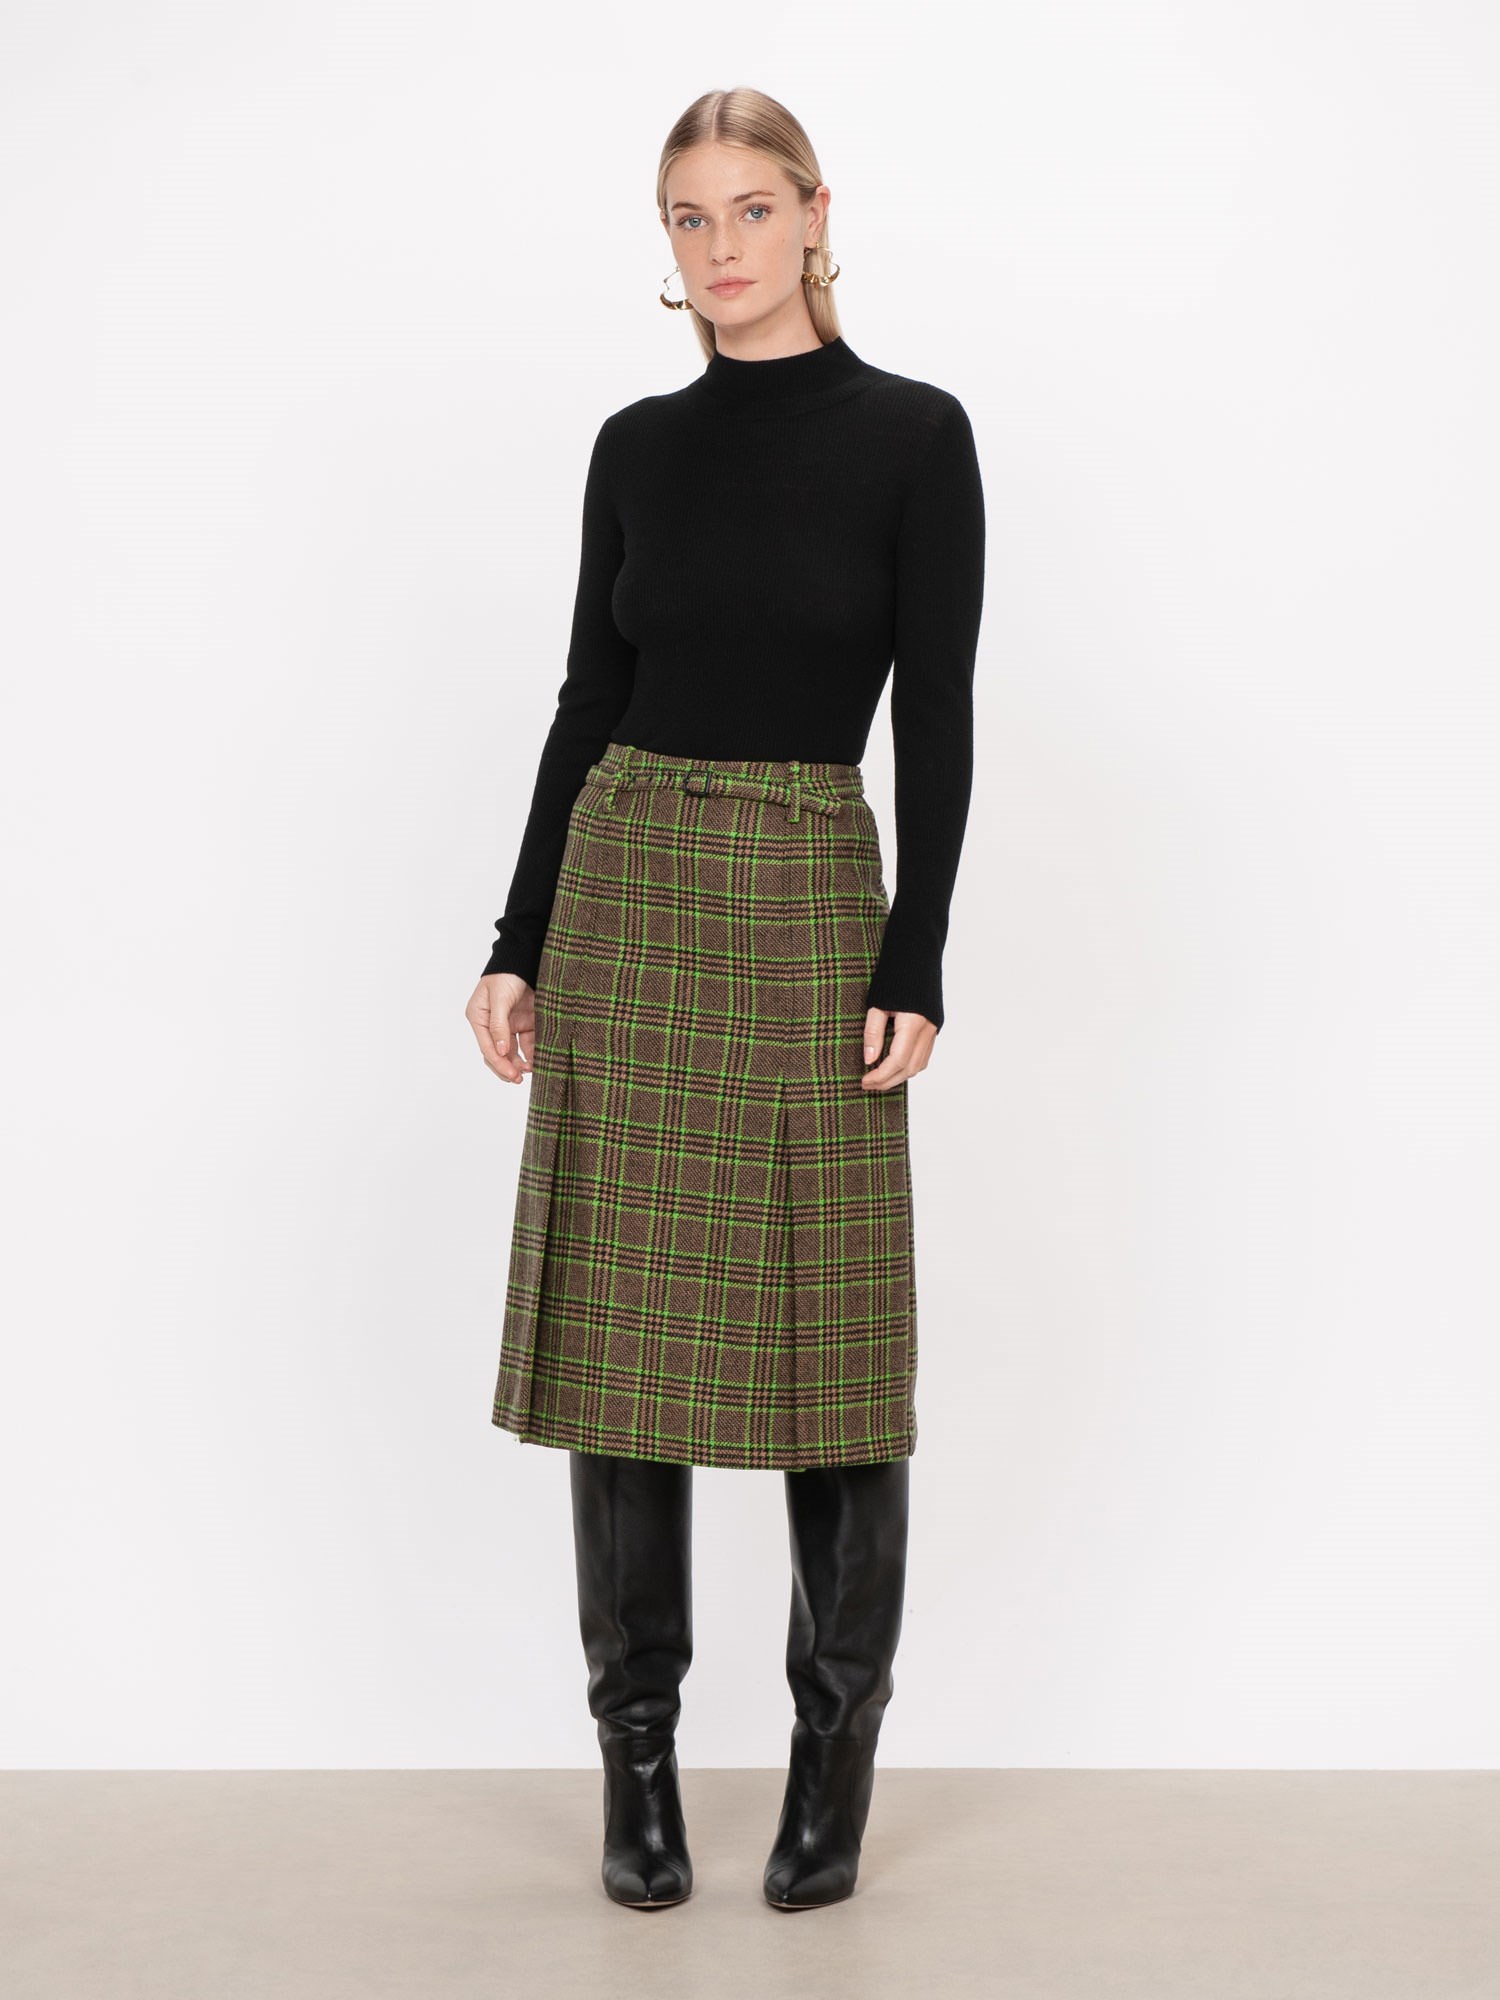 Neon Plaid Midi Skirt | Buy Skirts Online - Veronika Maine